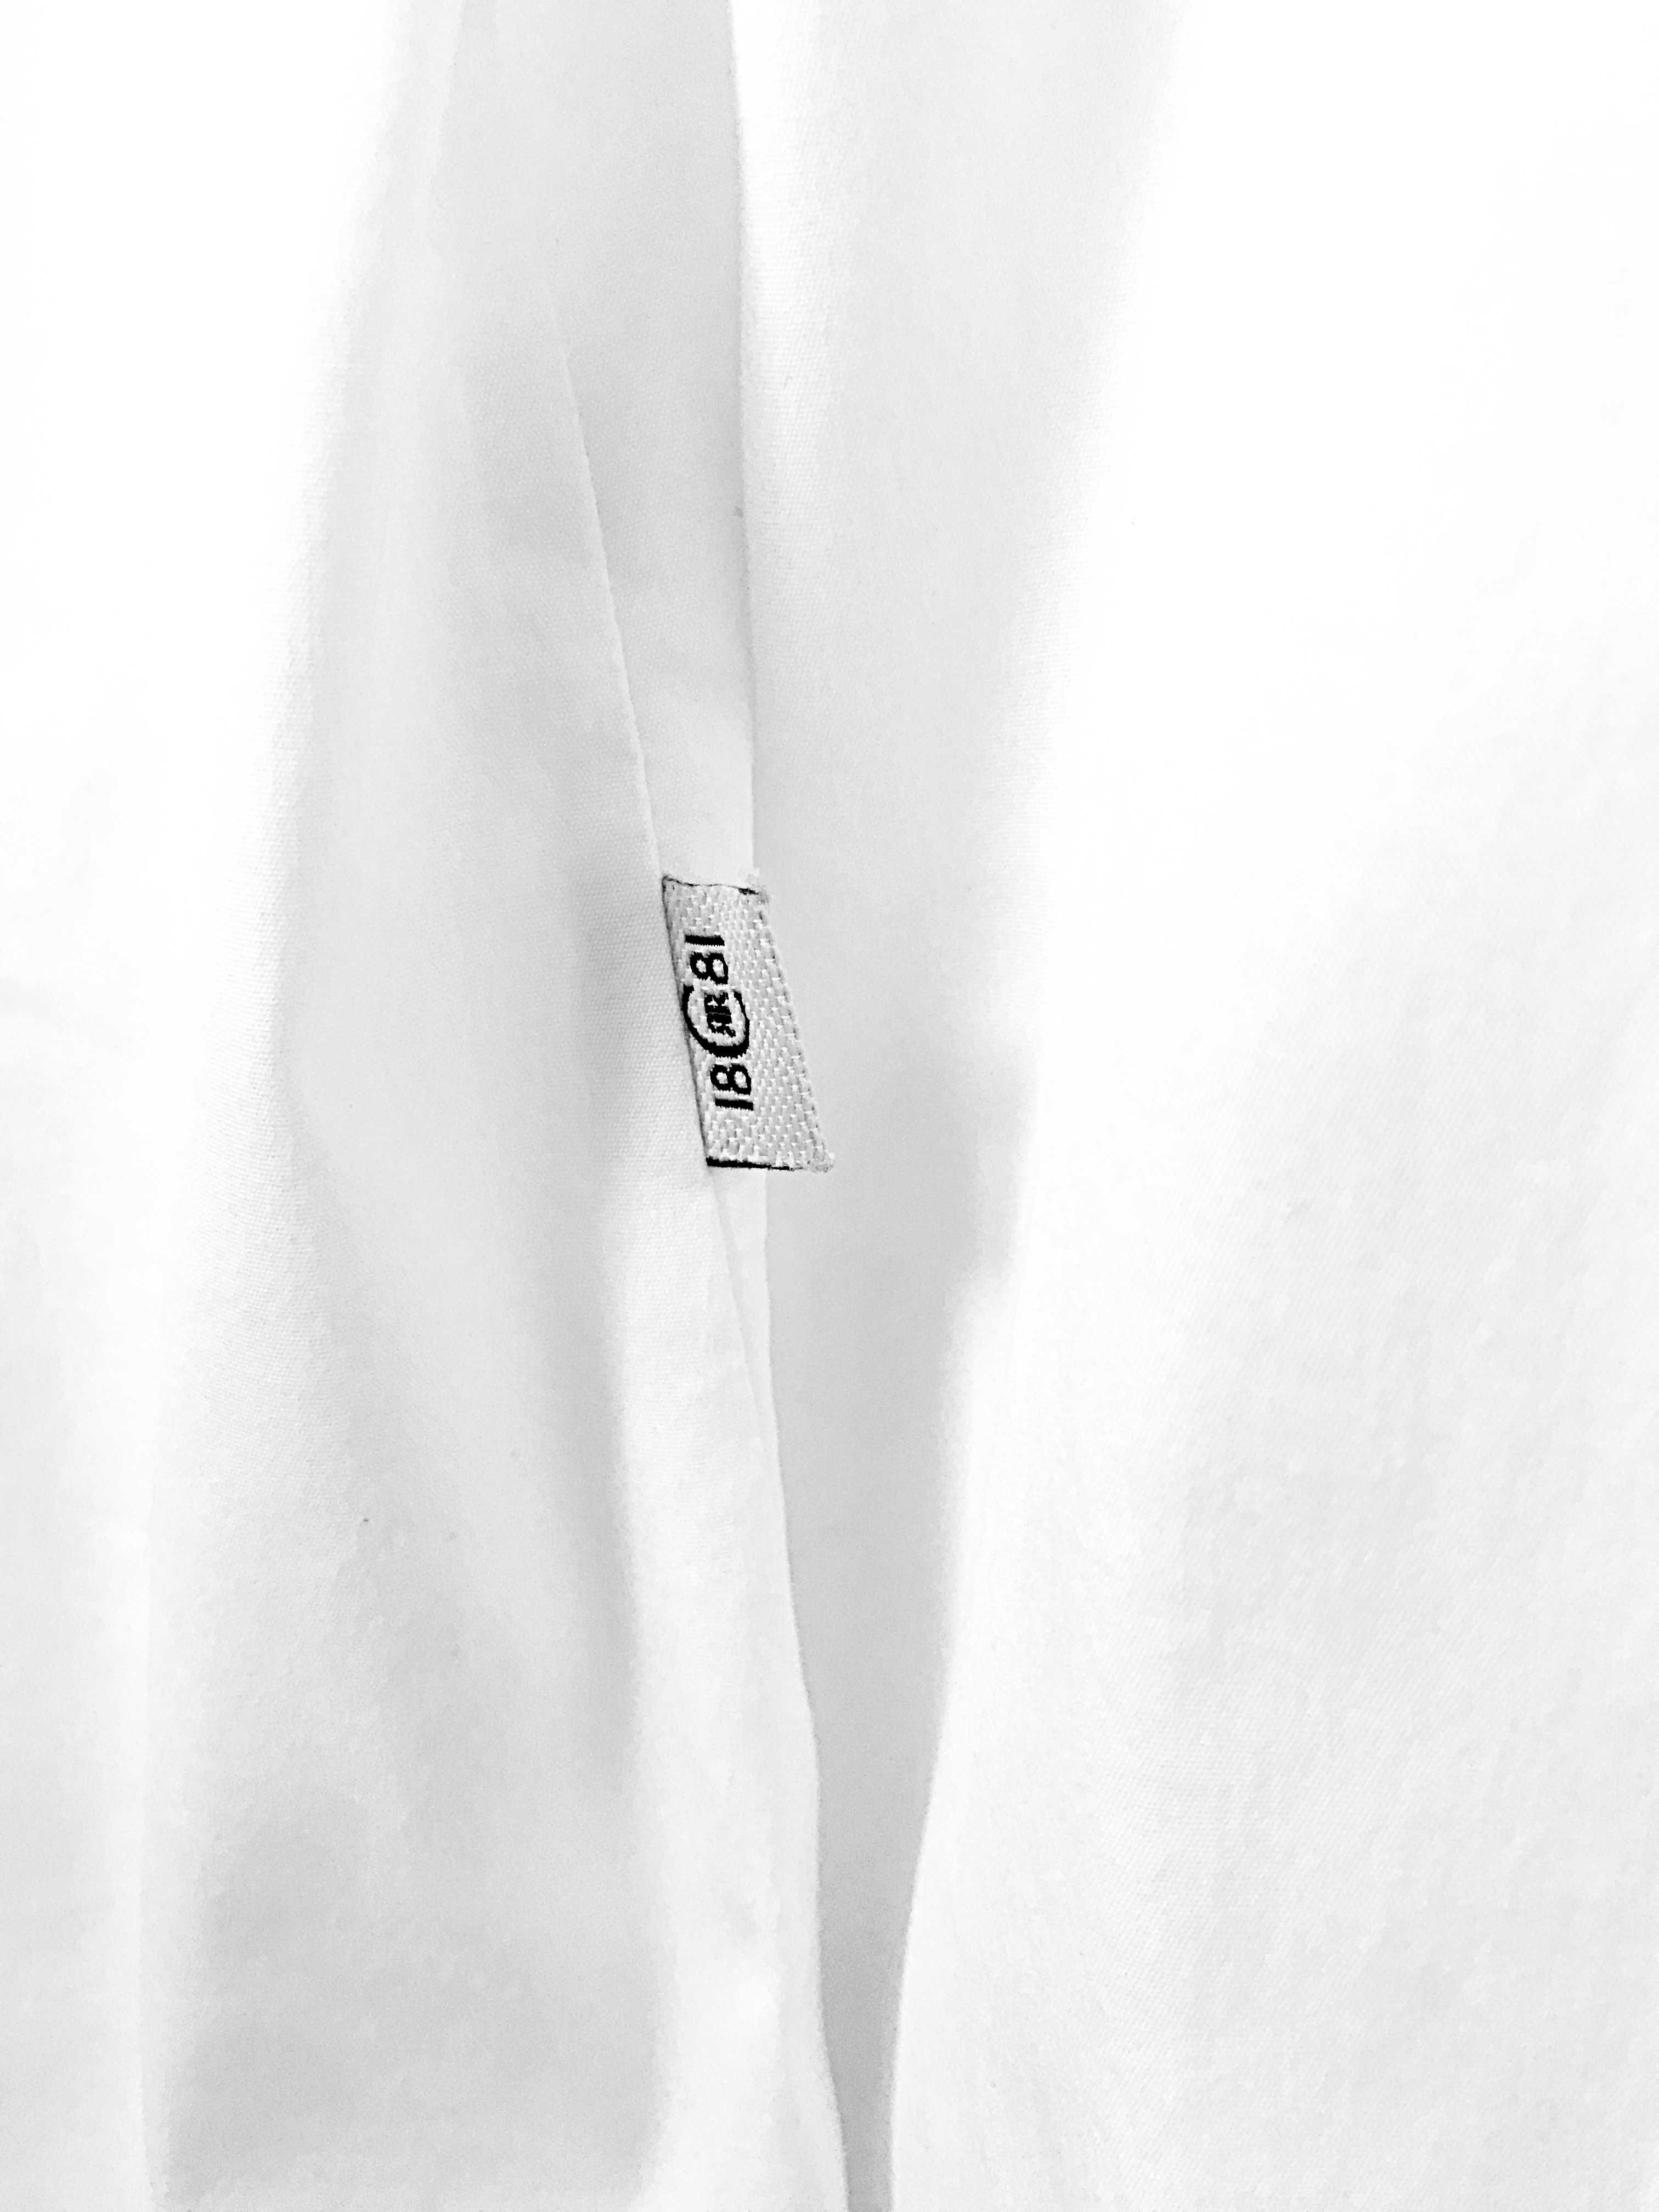 Biała koszula od renomowanej marki premium Cerruti 1881